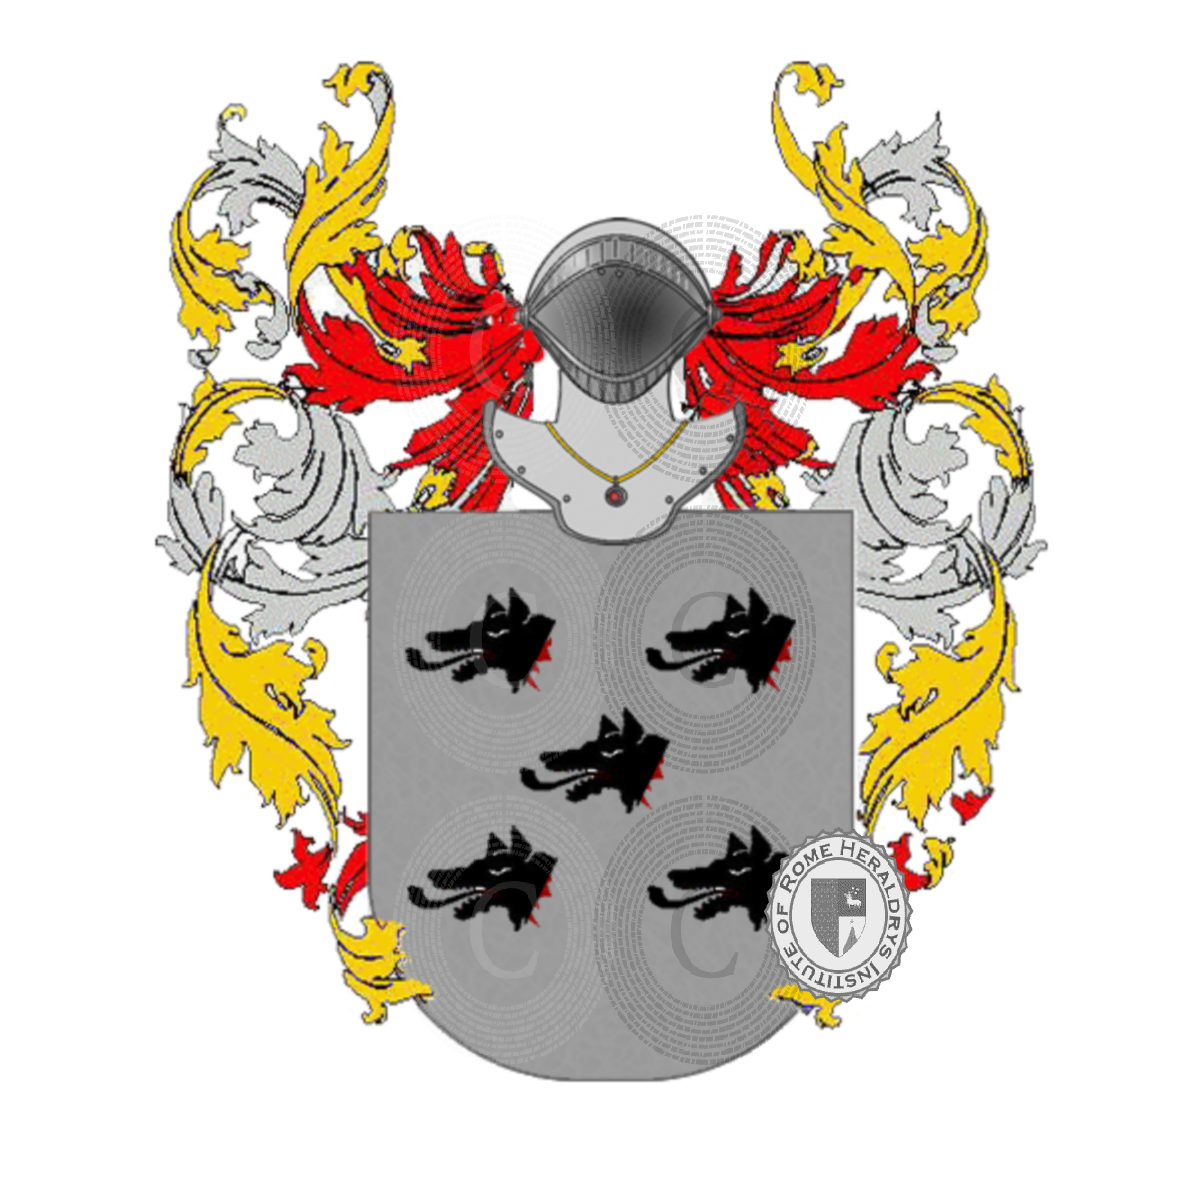 Coat of arms of familypossa    